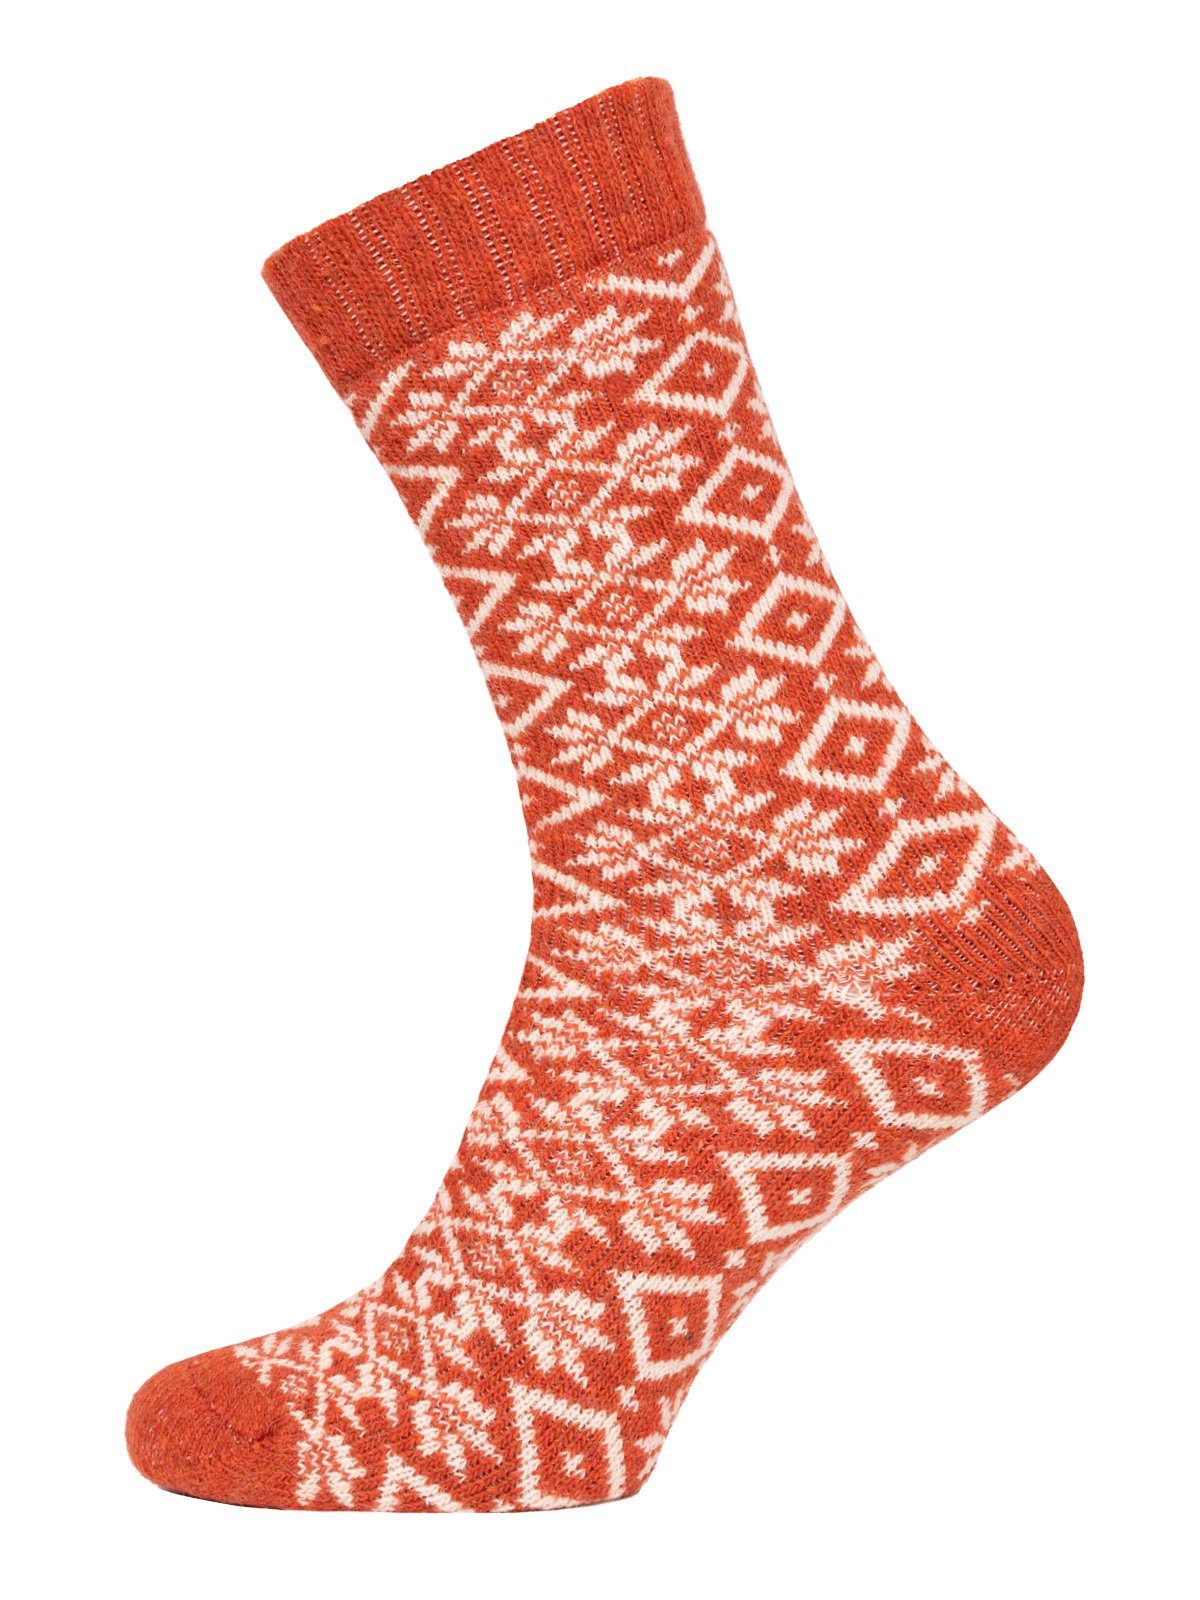 HomeOfSocks Socken Hygge Socken Dick Für Herren & Damen mit Wolle Dicke Socken Hyggelig Warm Mit Hohem 45% Wollanteil In Bunten Design Orange